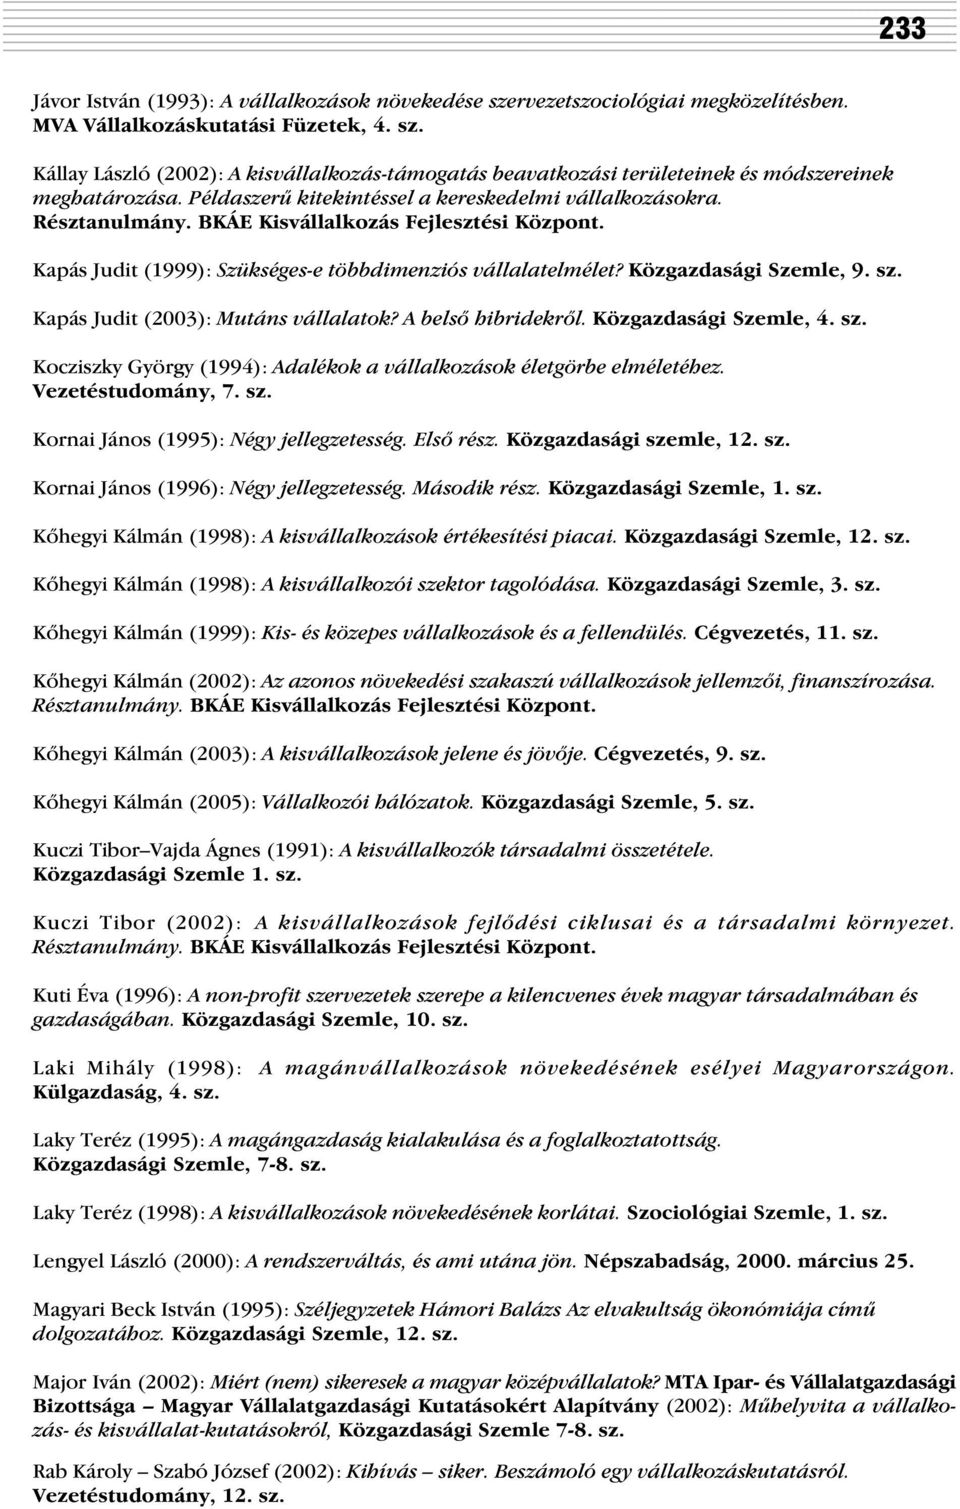 sz. Kapás Judit (2003): Mutáns vállalatok? A belsõ hibridekrõl. Közgazdasági Szemle, 4. sz. Kocziszky György (1994): Adalékok a vállalkozások életgörbe elméletéhez. Vezetéstudomány, 7. sz. Kornai János (1995): Négy jellegzetesség.